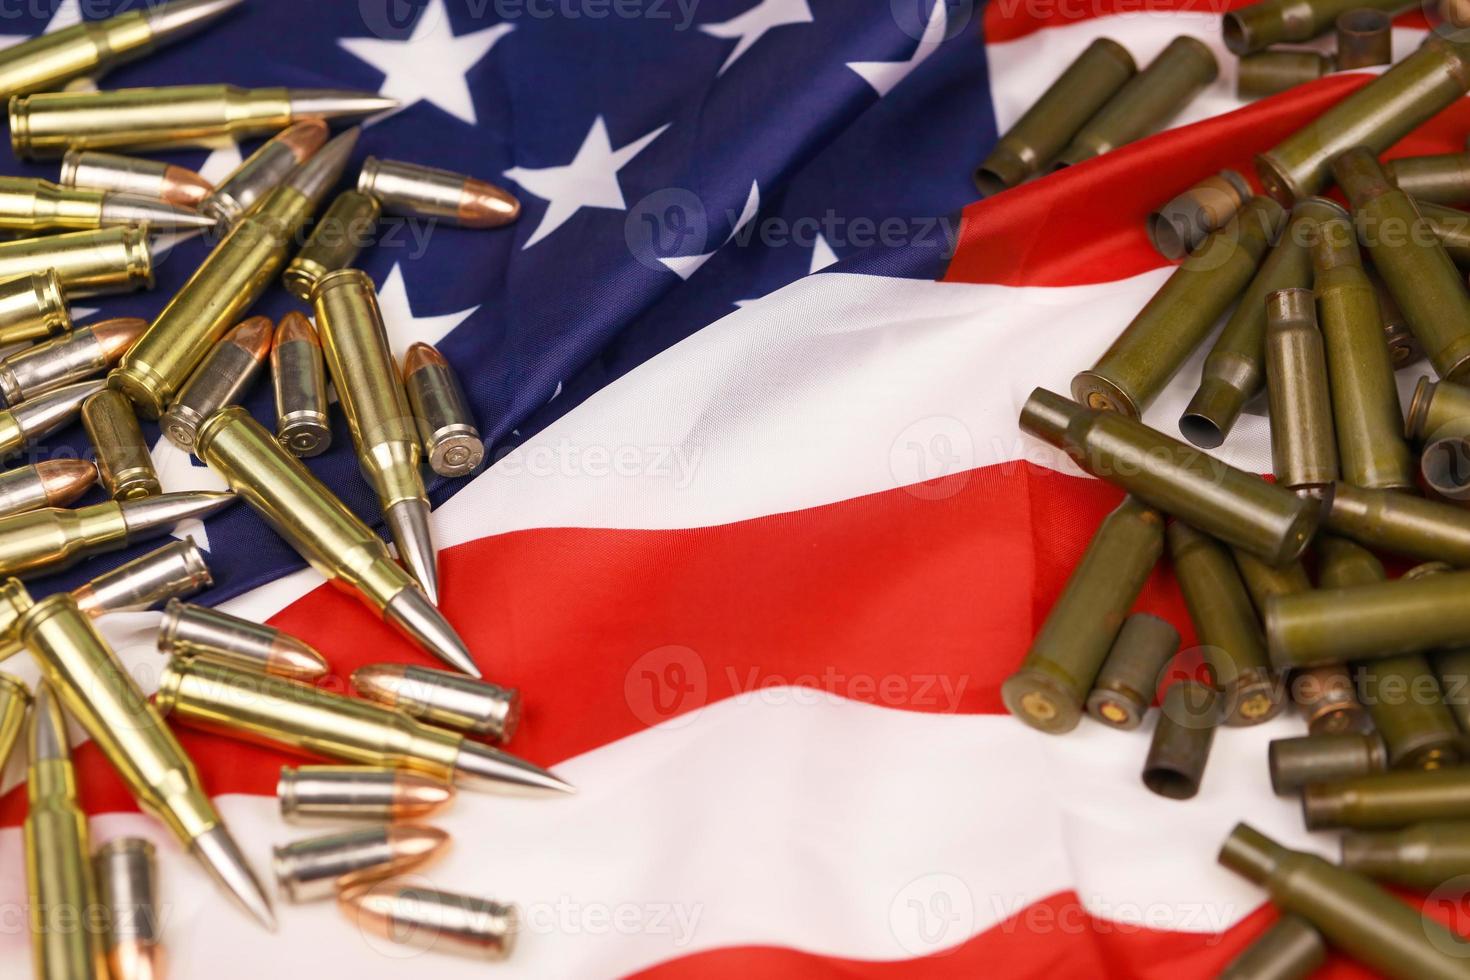 många gul 9mm och 5,56 mm kulor och patroner på förenad stater flagga. begrepp av pistol trafficking på USA territorium eller skytte räckvidd foto